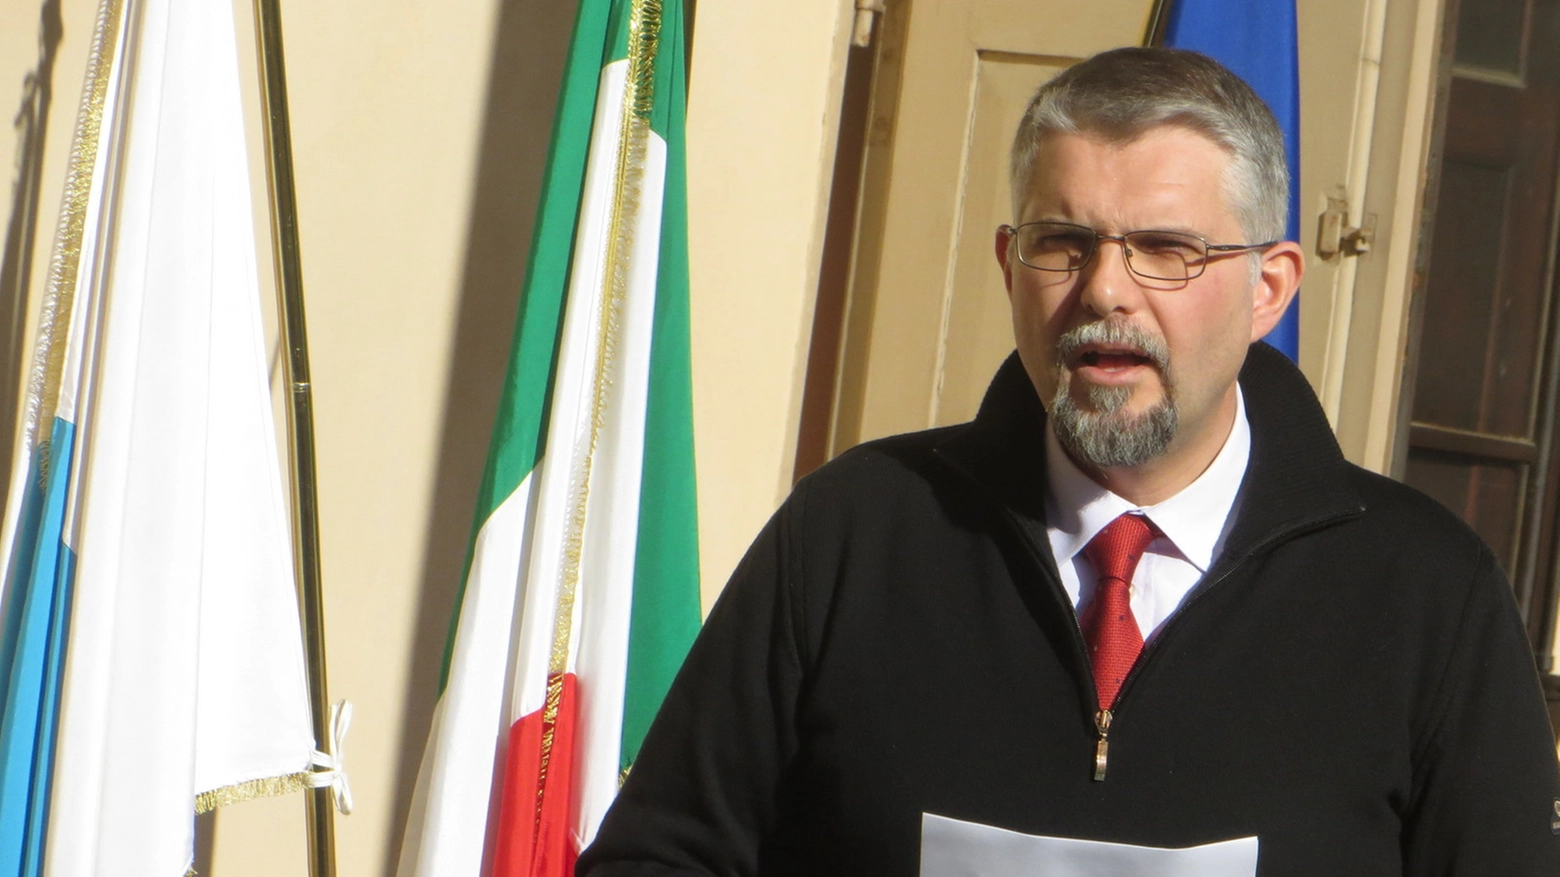 Giovanni Malpezzi, guiderà il Comune di Faenza per altri 5 anni